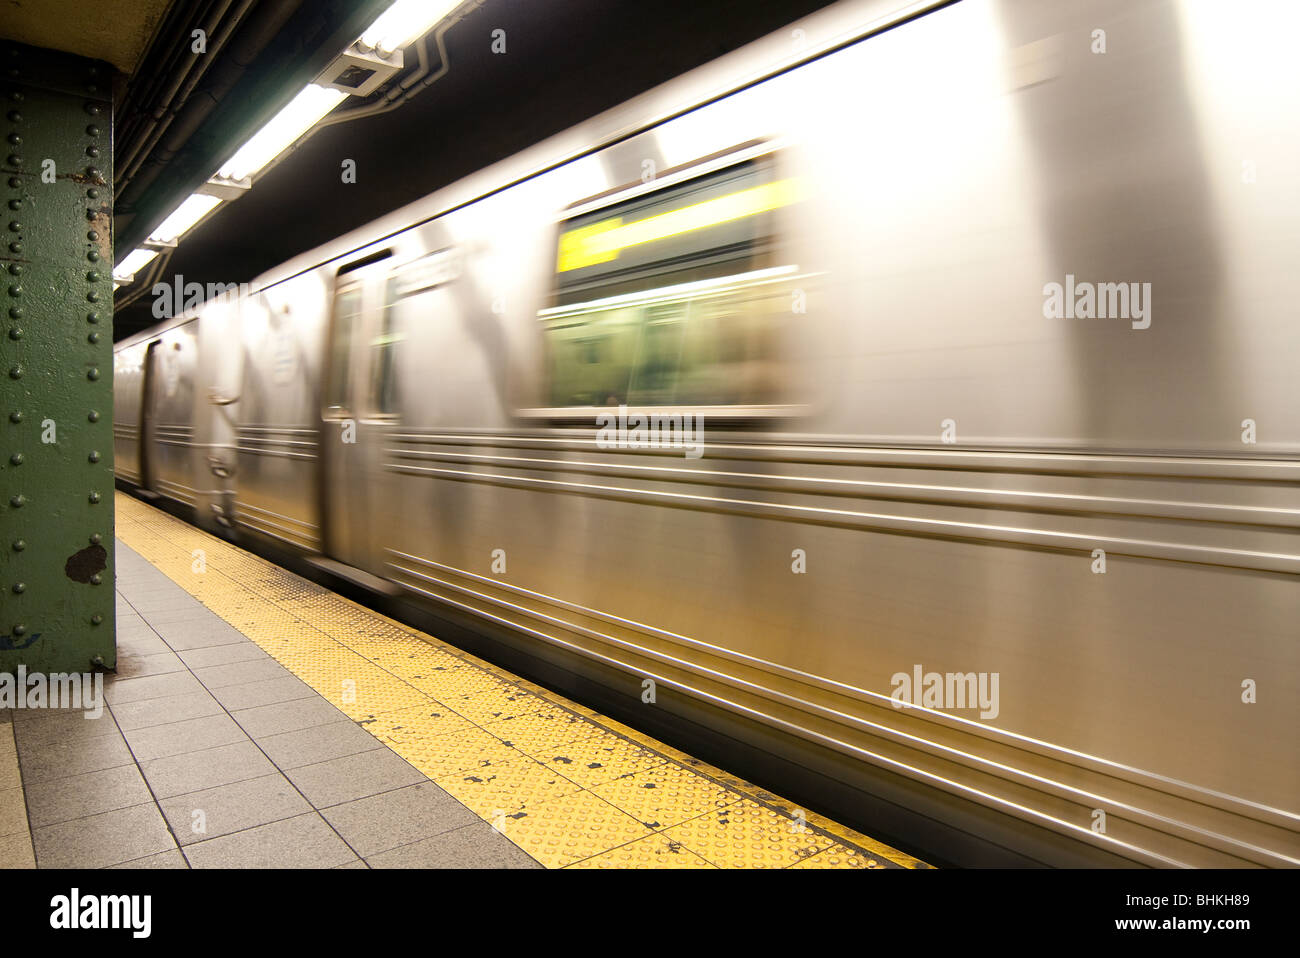 Ein Silber MTA Pendler u-Bahn Zug Wagen in Bewegung verwischt Reiten durch eine Station in New York City neben einer leeren Plattform. Stockfoto